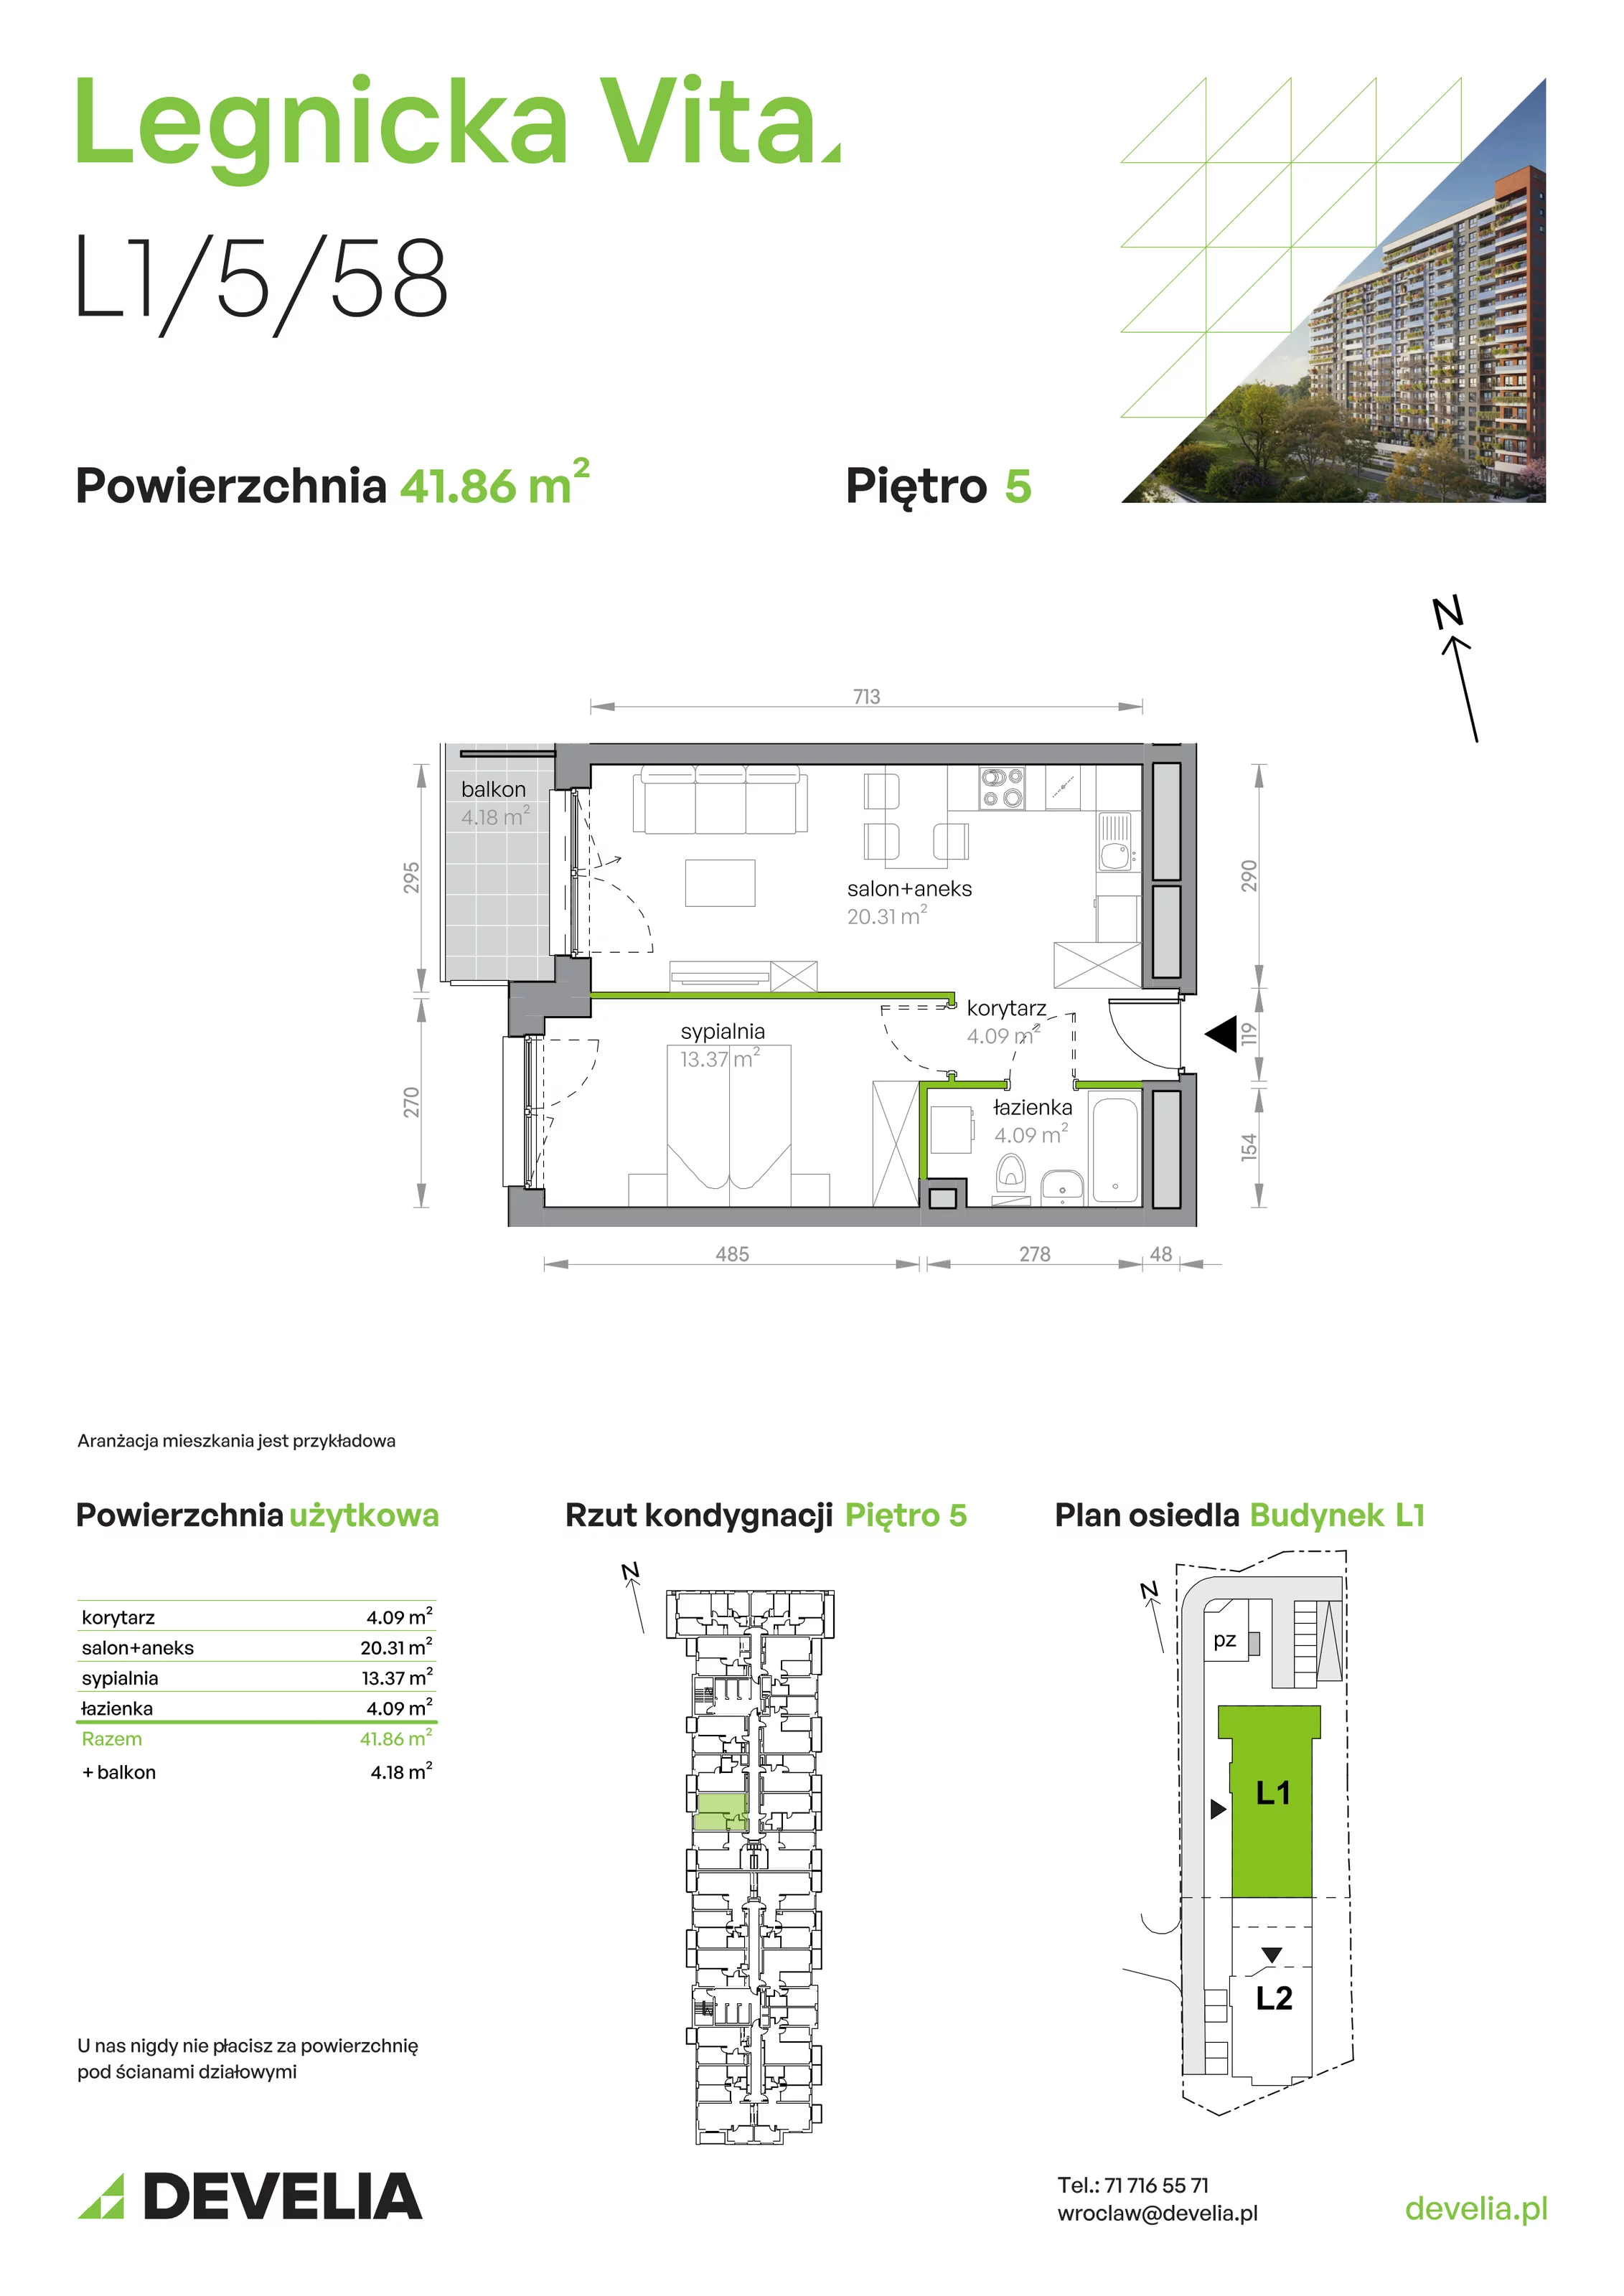 Mieszkanie 41,86 m², piętro 5, oferta nr L1/5/58, Legnicka Vita, Wrocław, Gądów-Popowice Południowe, Popowice, ul. Legnicka 52 A